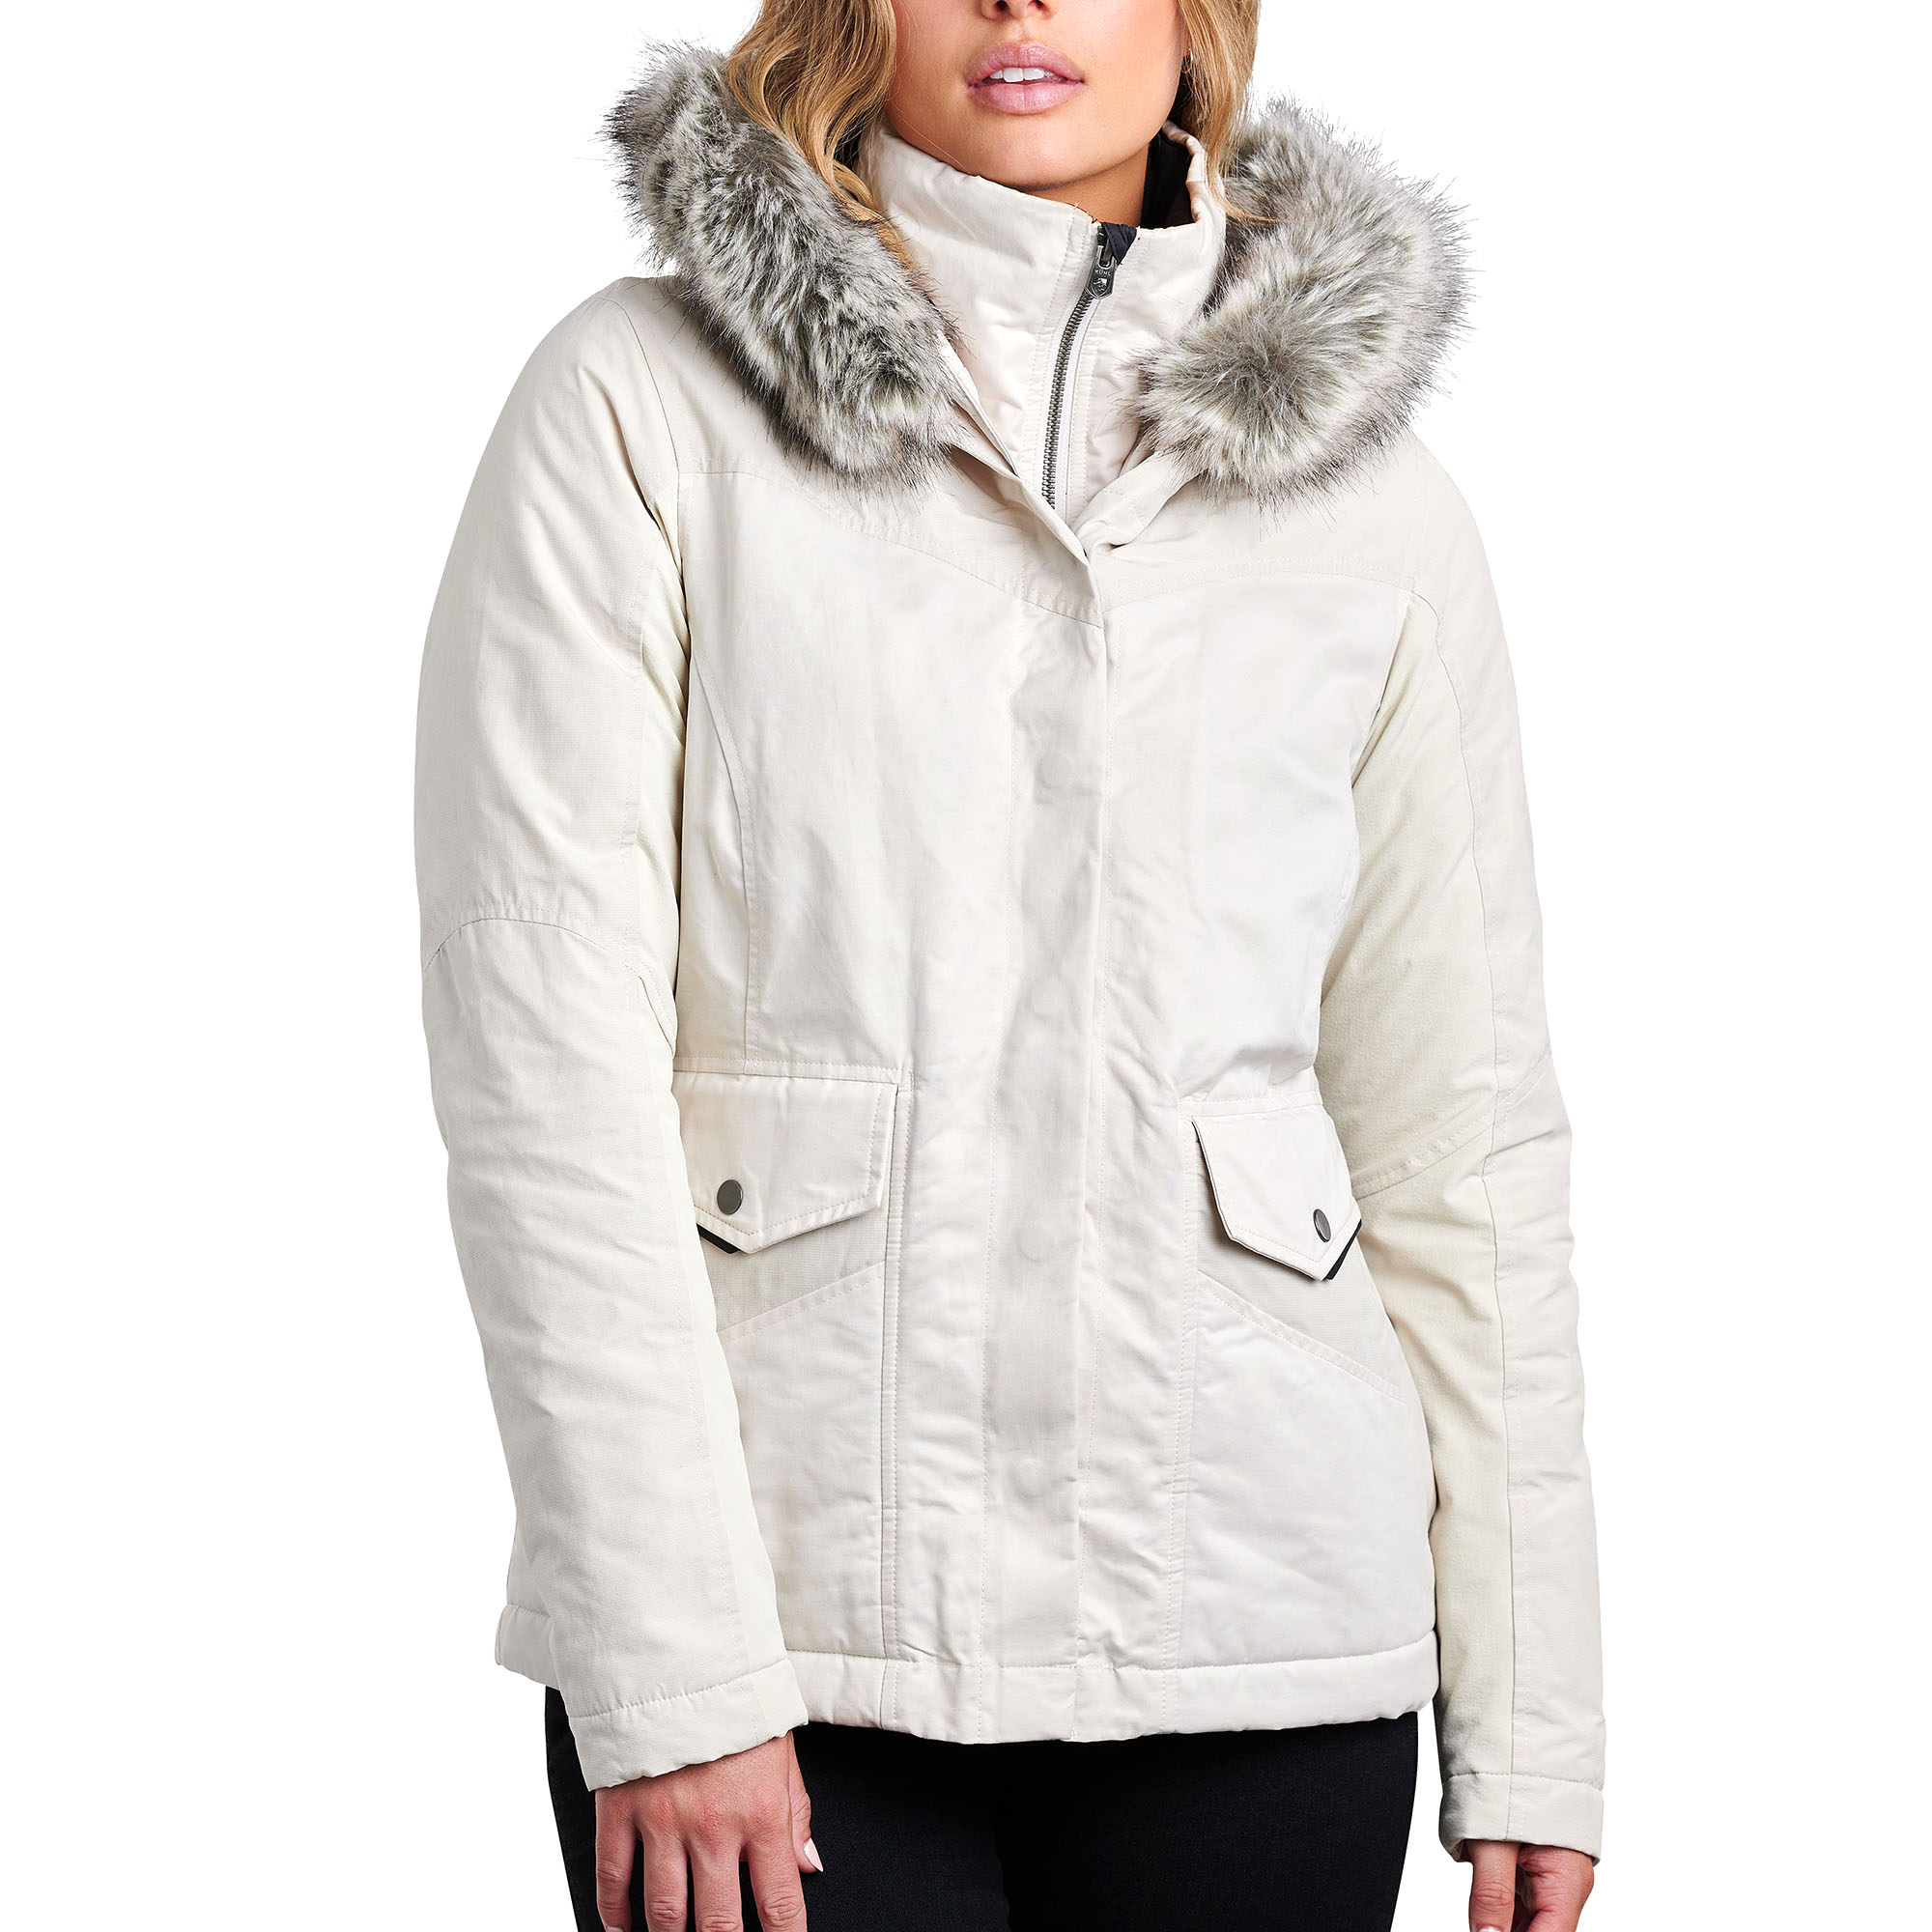 Kuhl White Fleece Jackets for Women